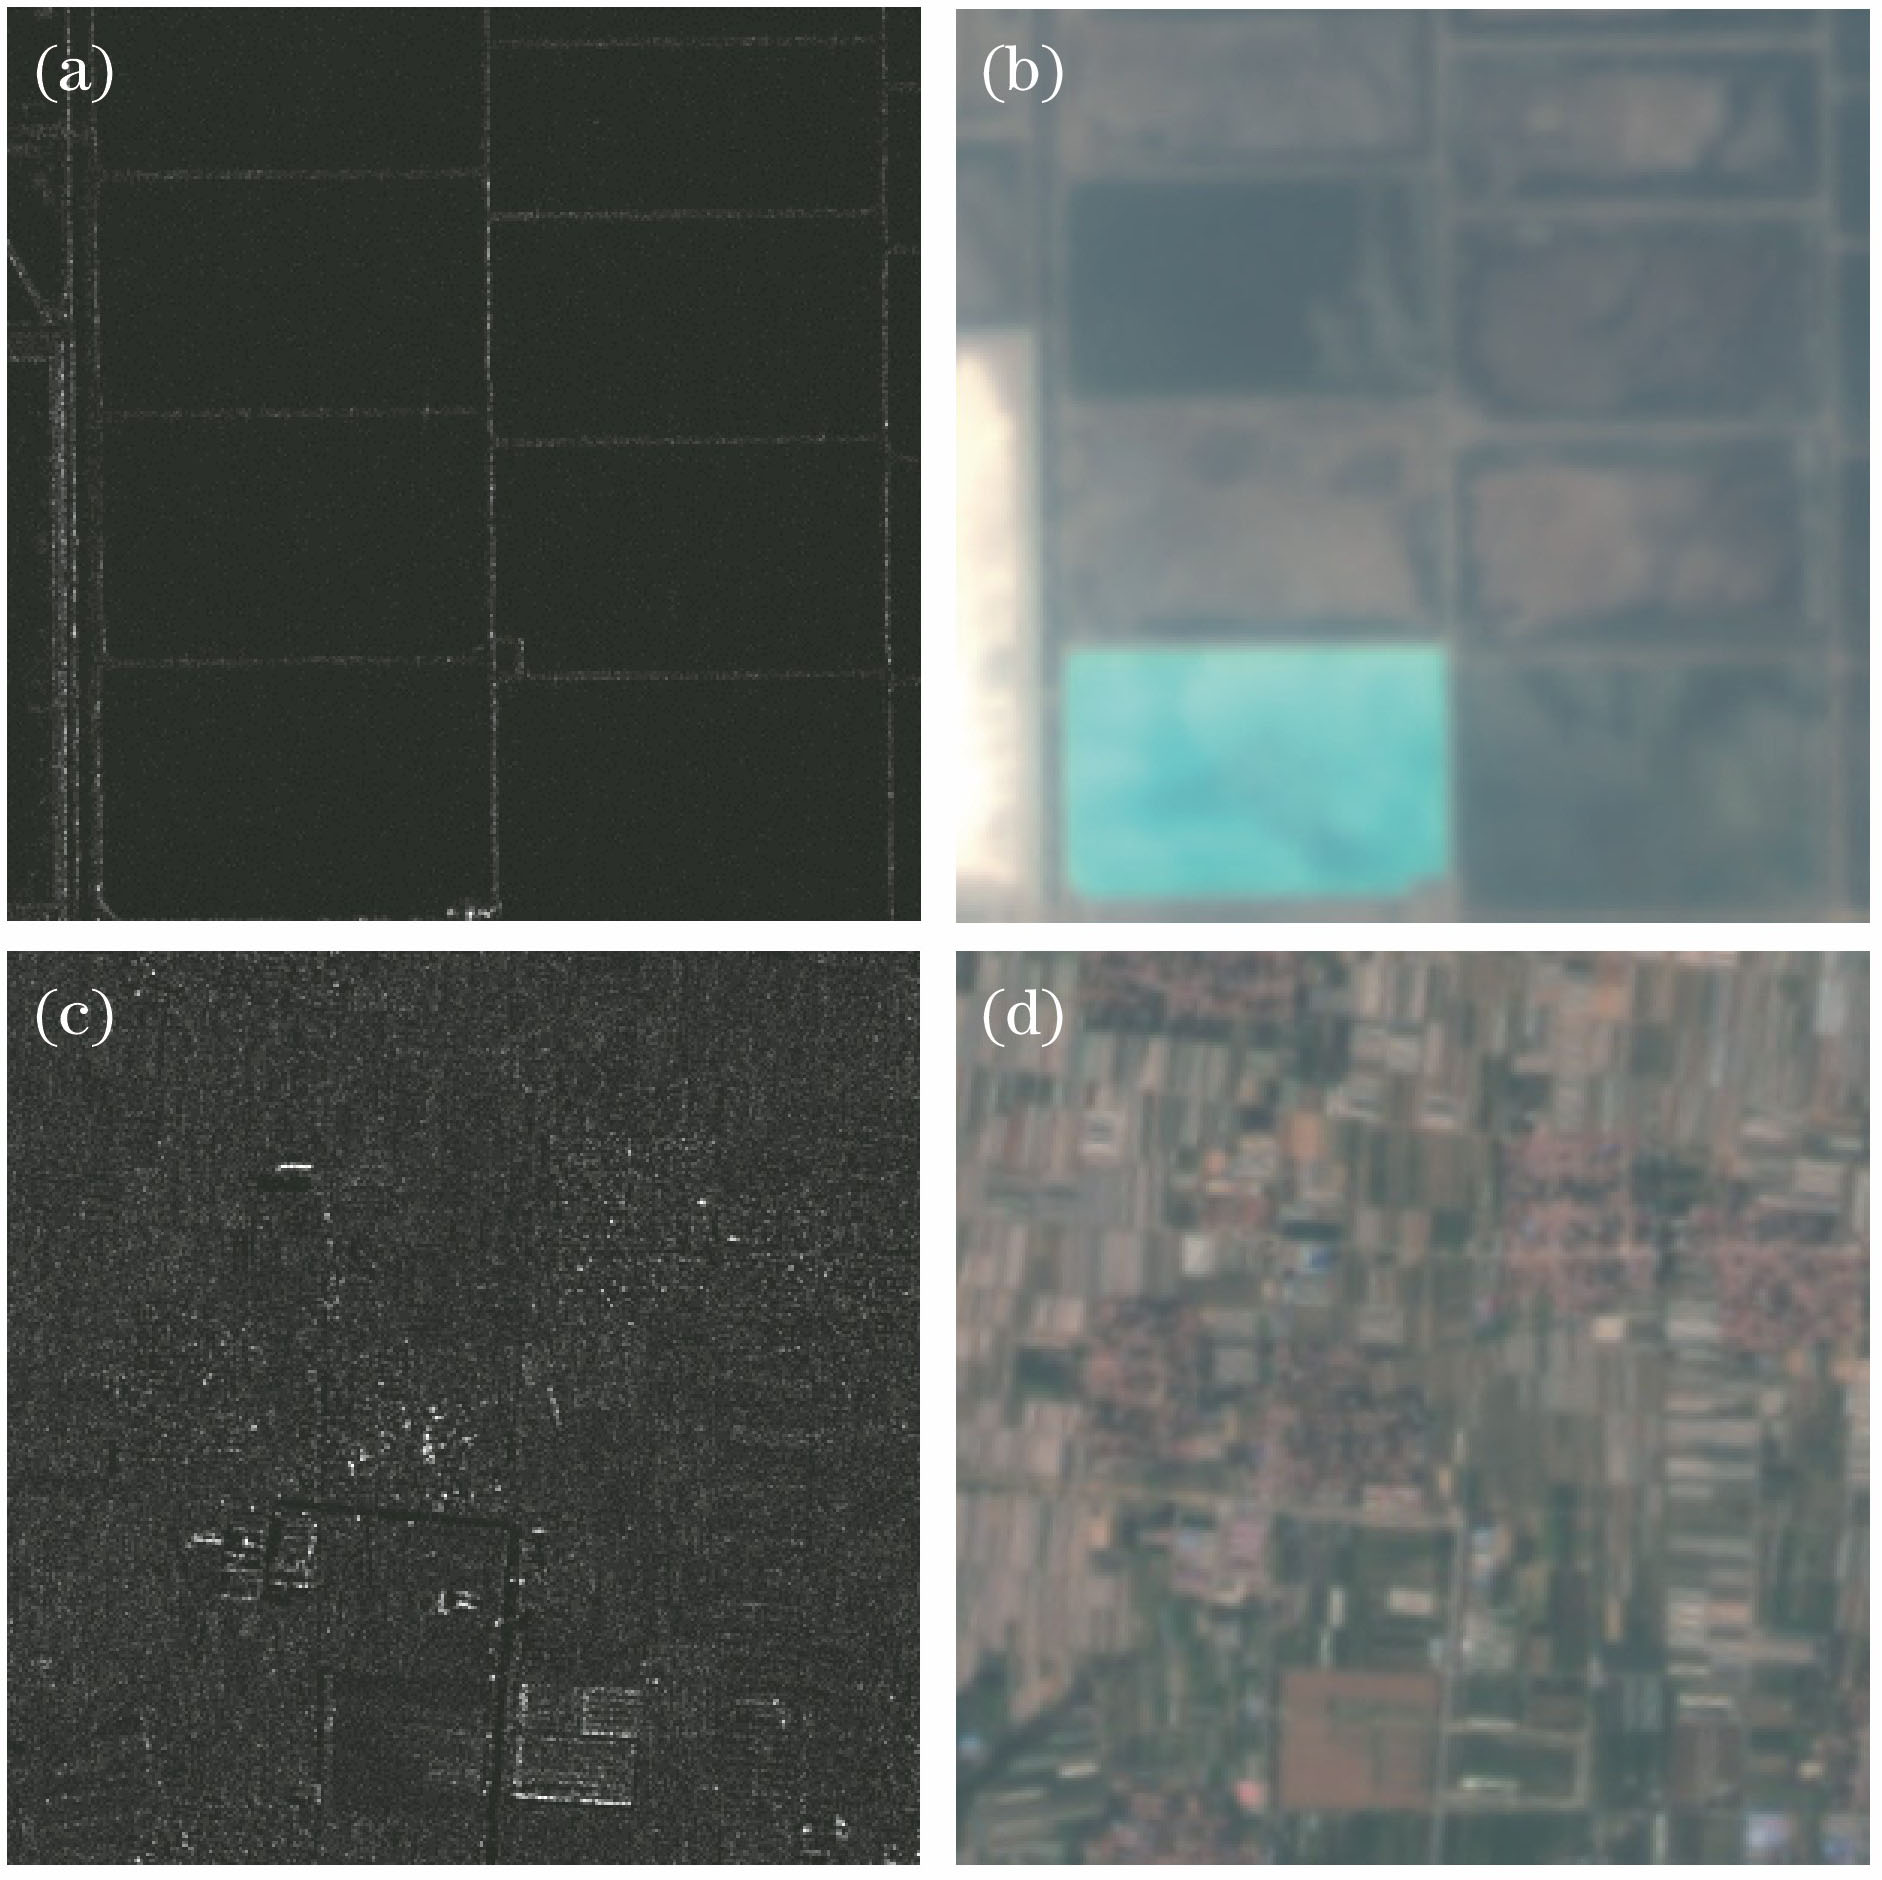 Original images. (a) 3 m SAR image; (b) 16 m multi-spectral images; (c) 5 m SAR image; (d) 16 m multi-spectral image